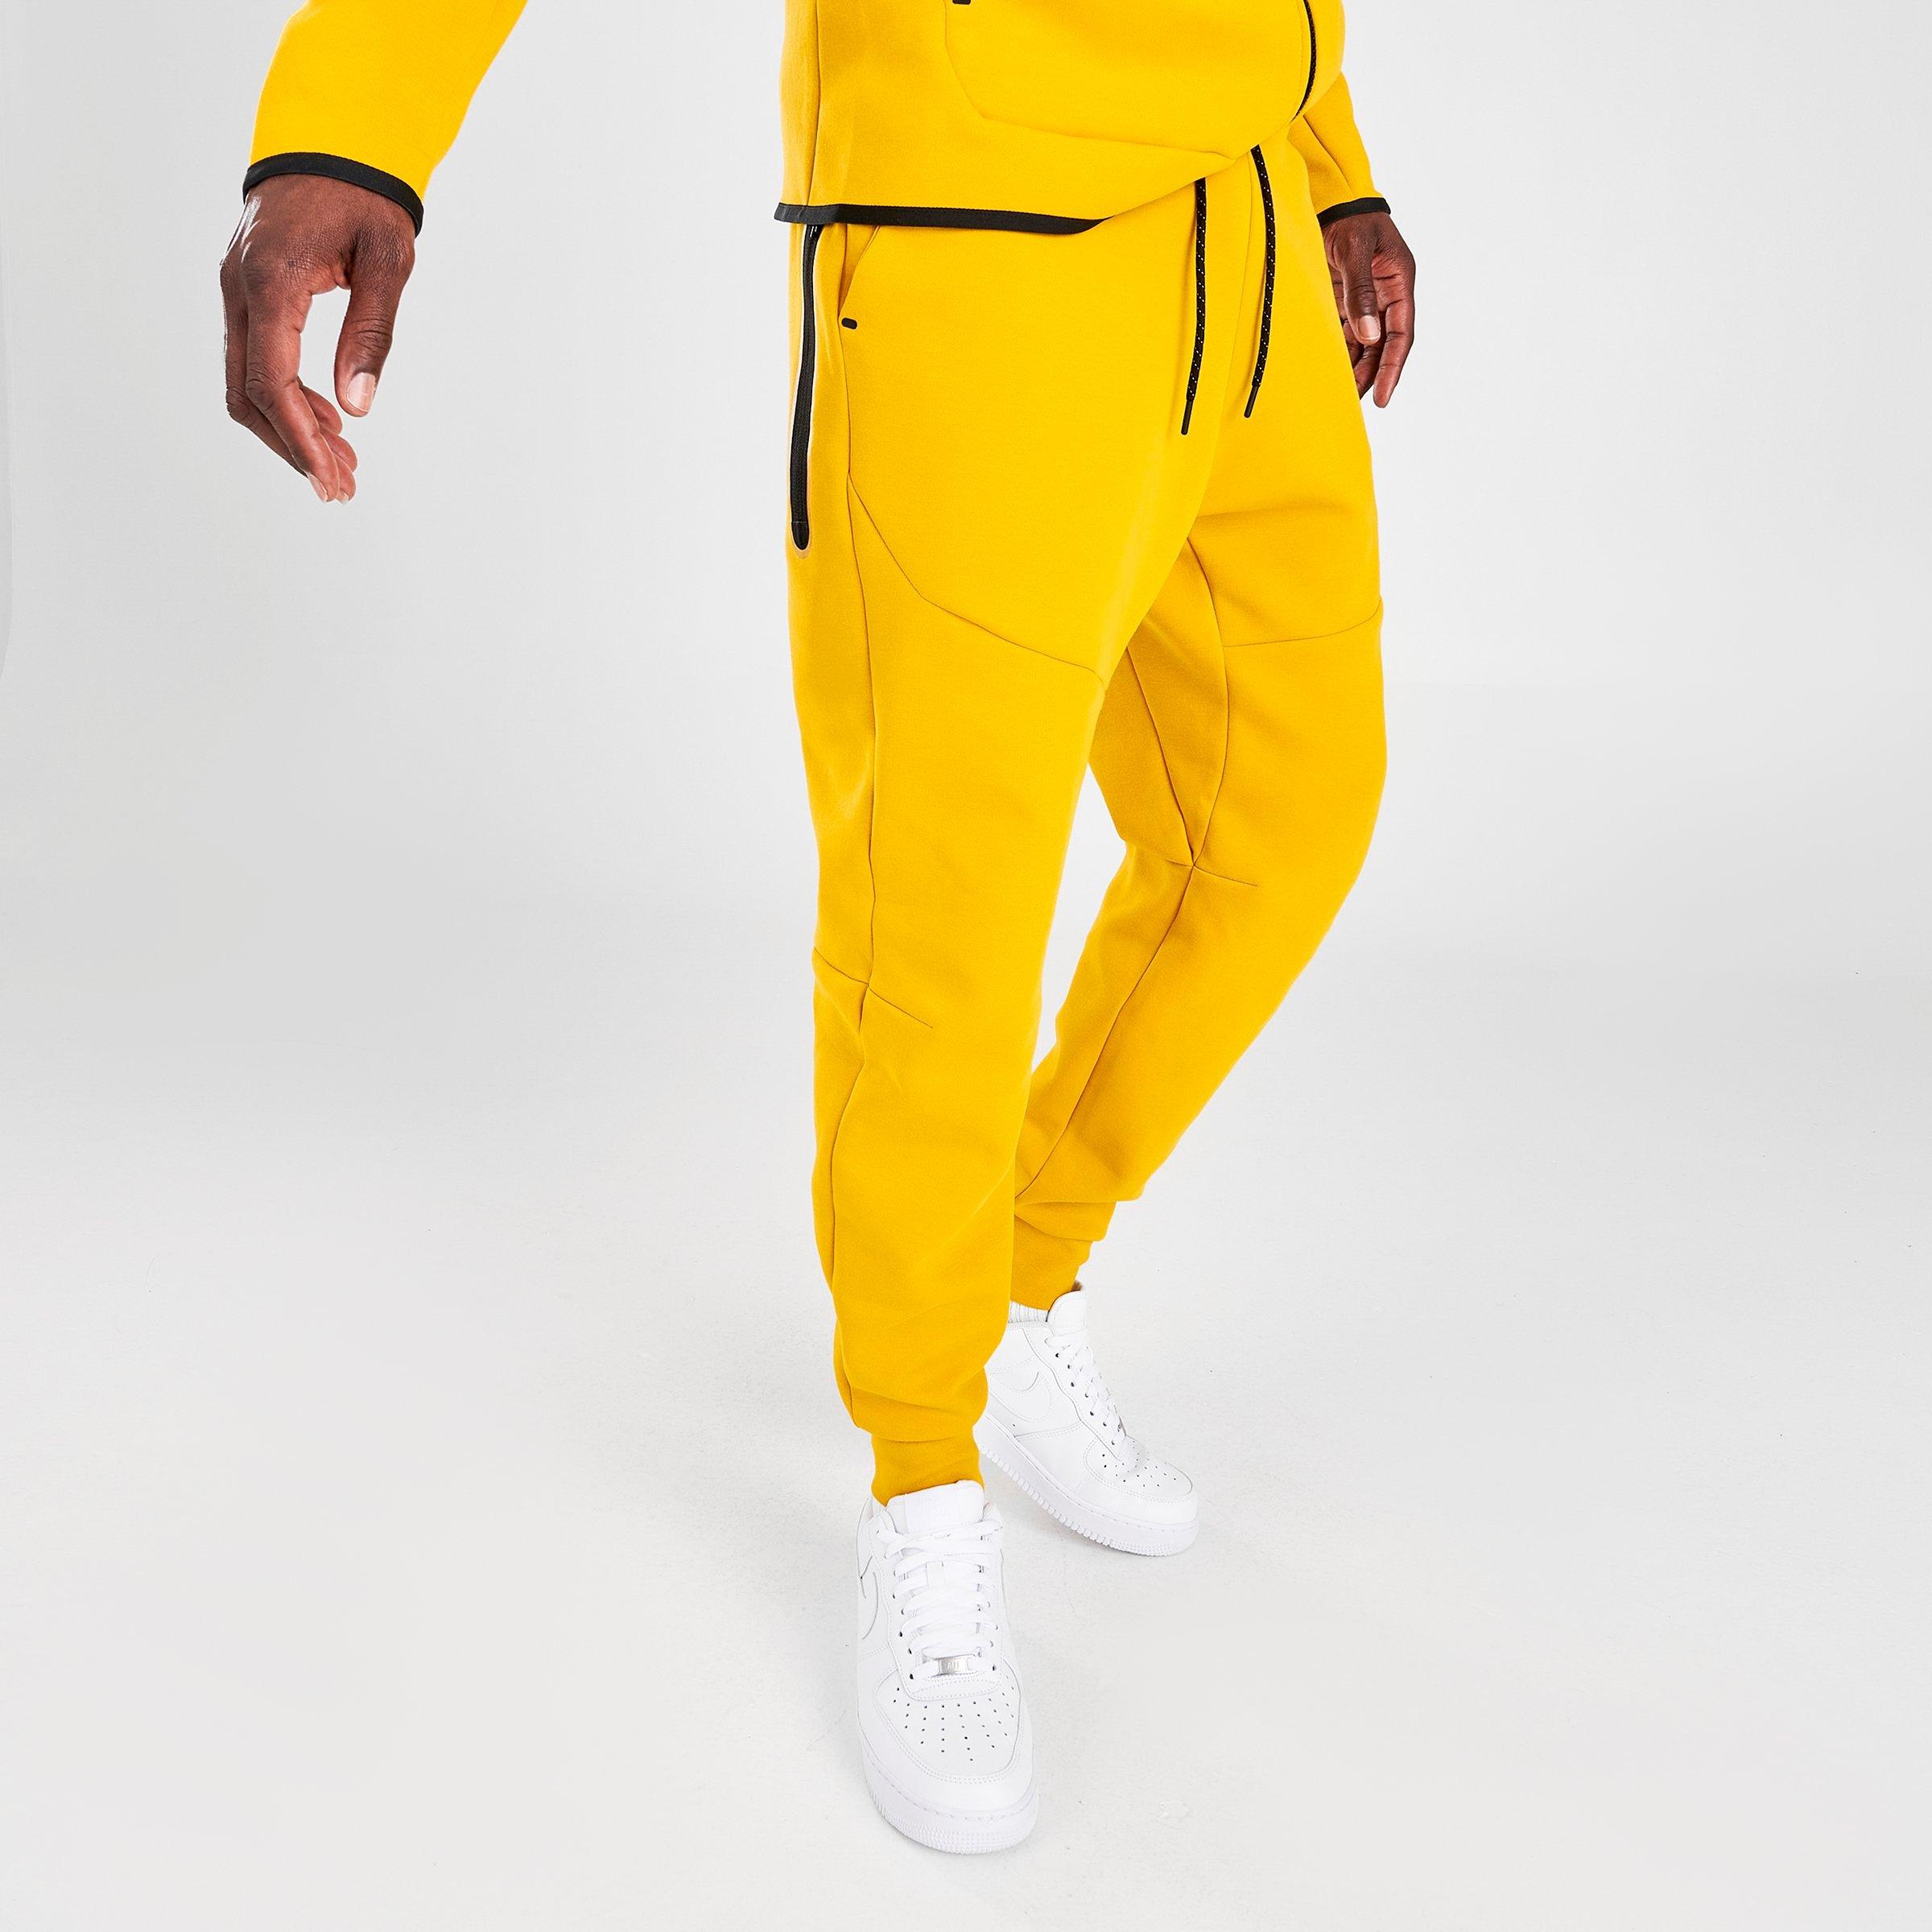 yellow nike tech fleece pants